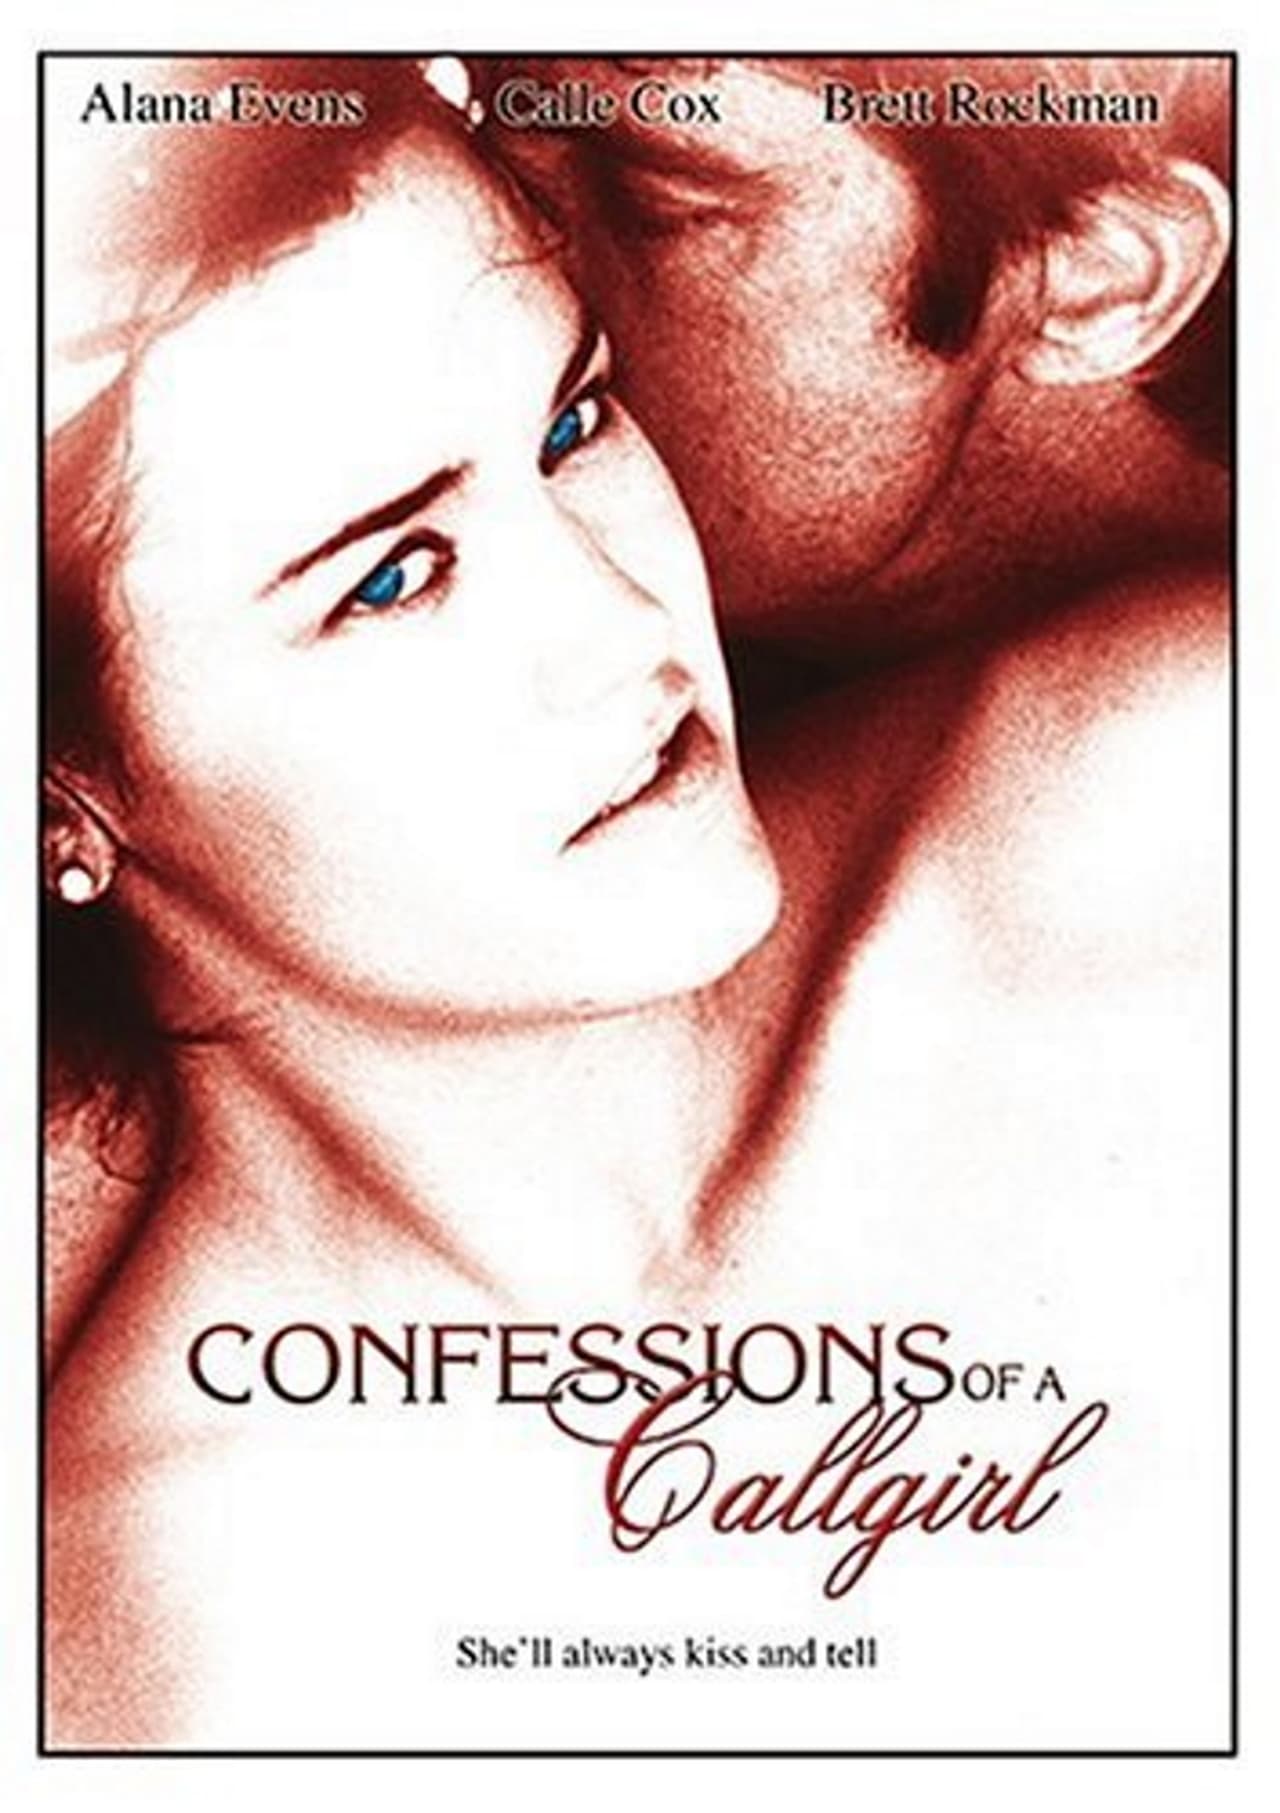 doug hibbing recommends Confessions Of A Callgirl